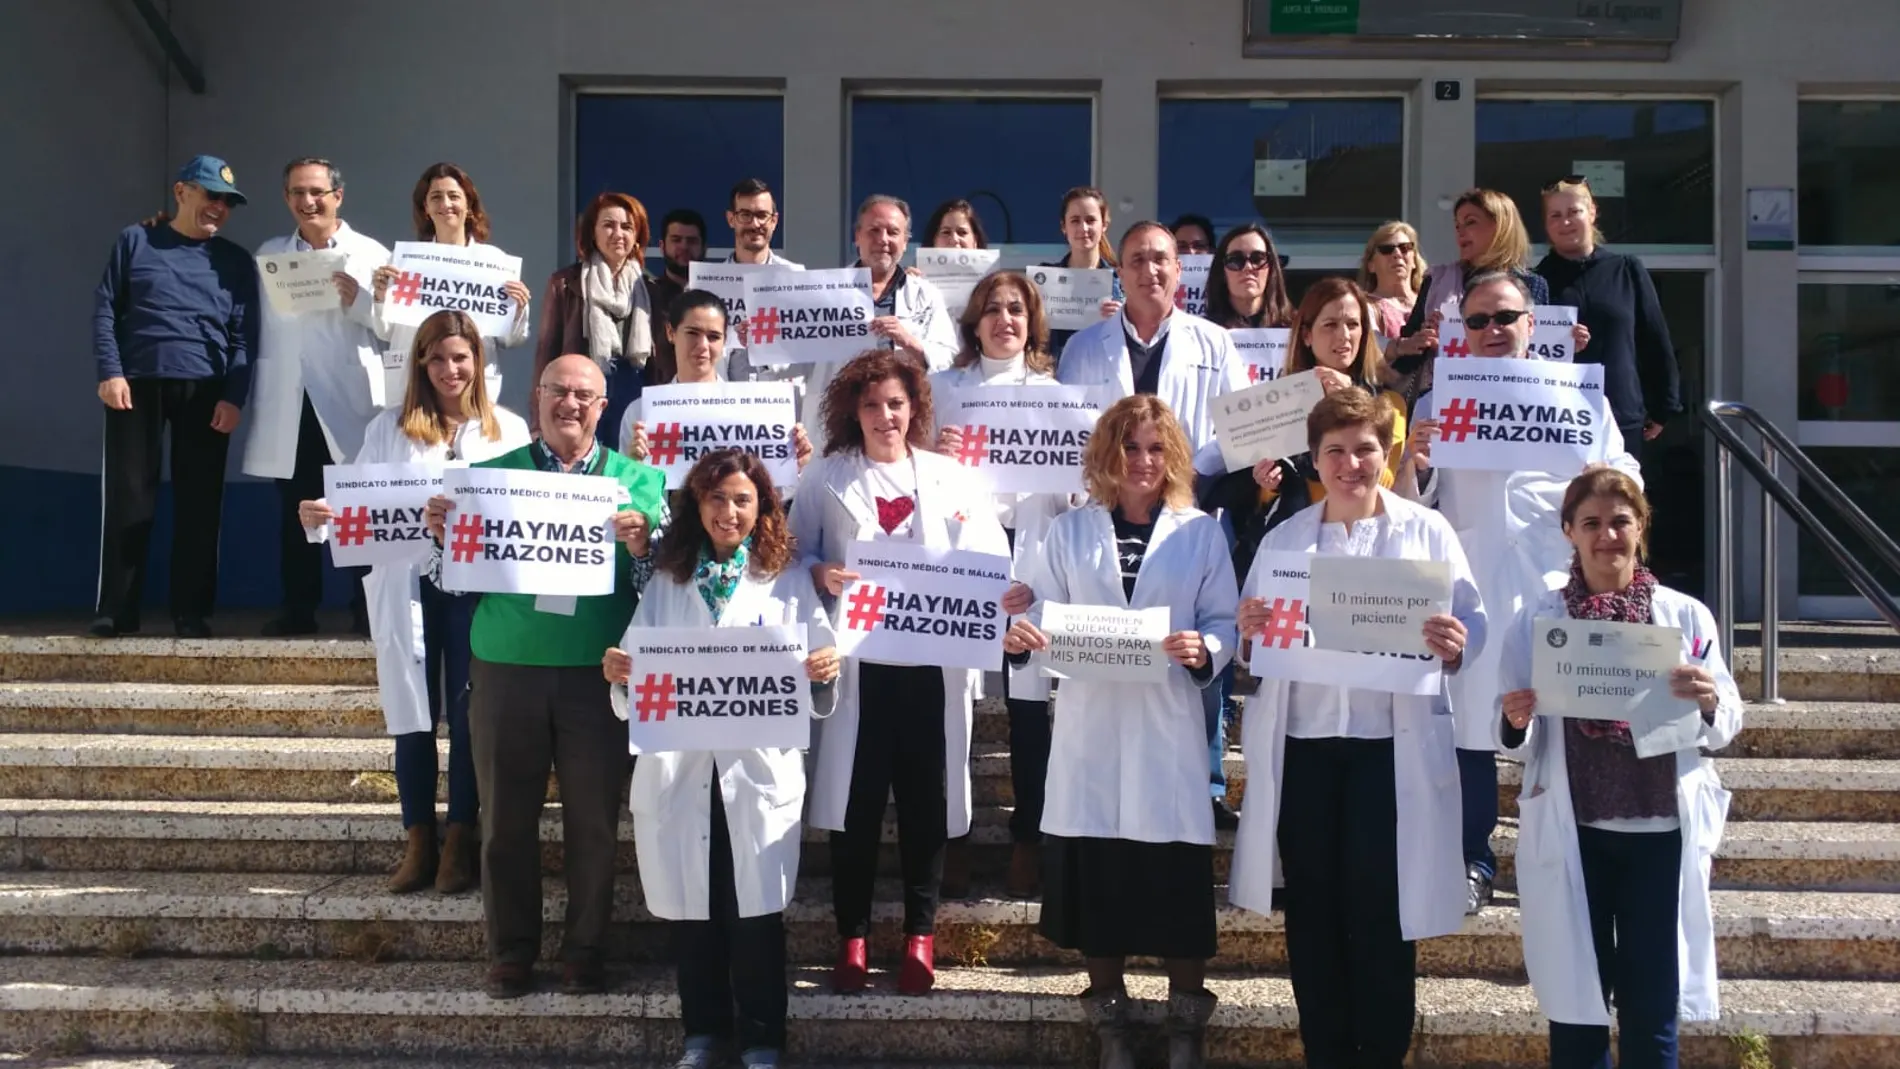 Los médicos de Málaga protestaron ayer para reclamar diez minutos por paciente / Foto: La Razón